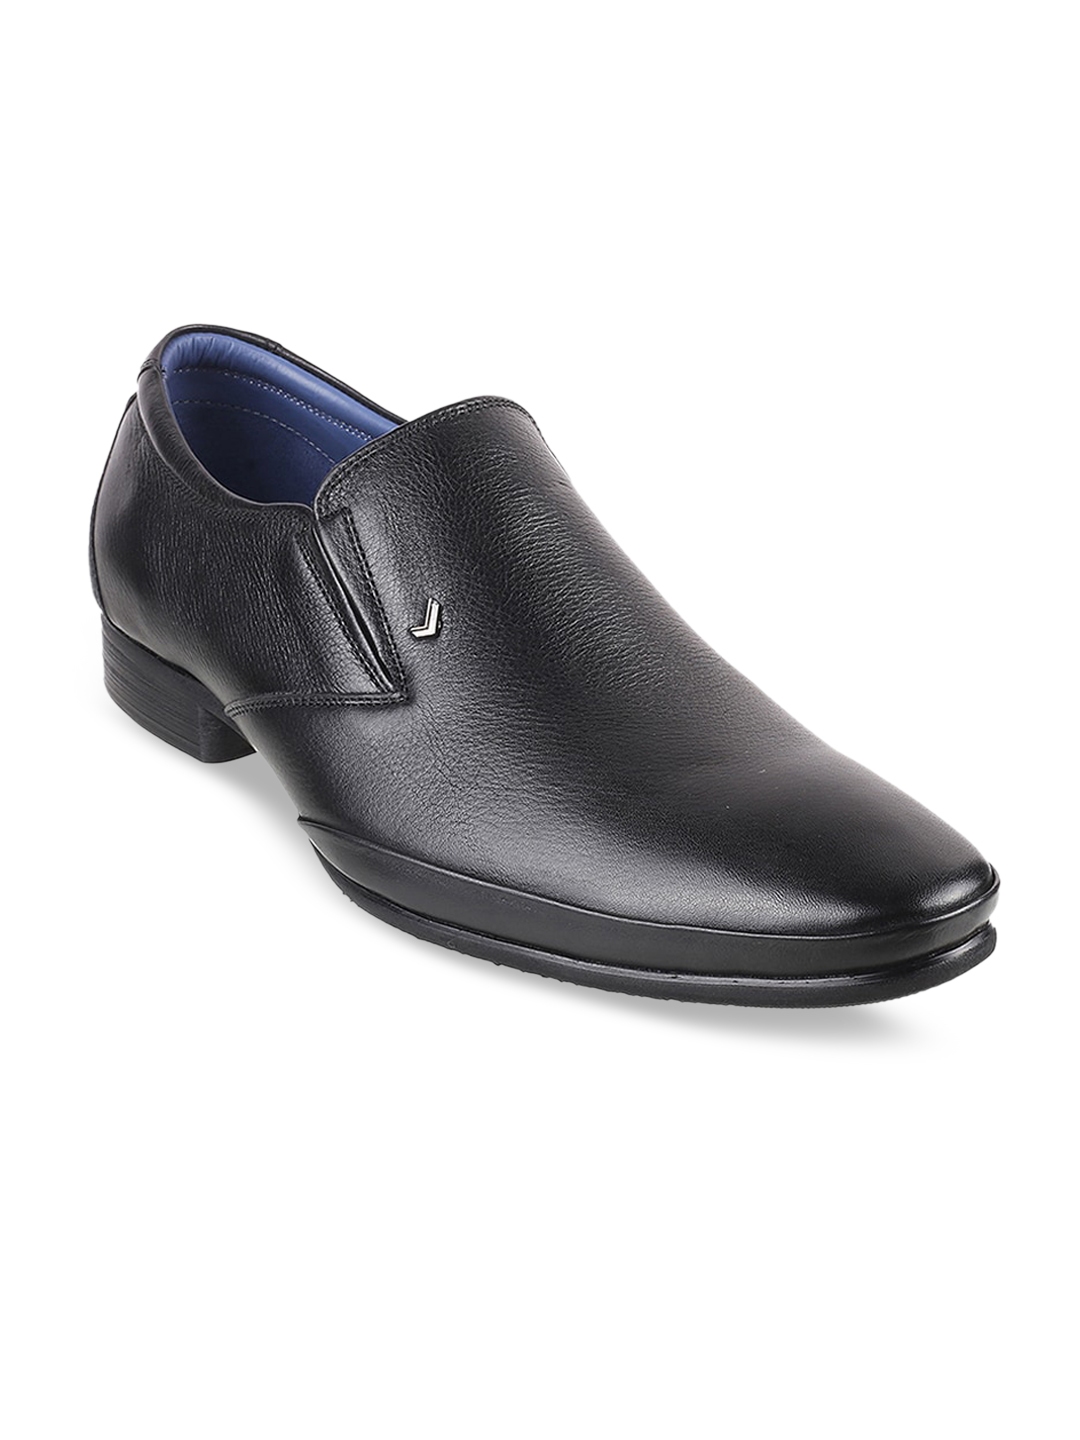 Buy DAVINCHI Men Black Solid Leather Formal Slip On Shoes - Formal ...